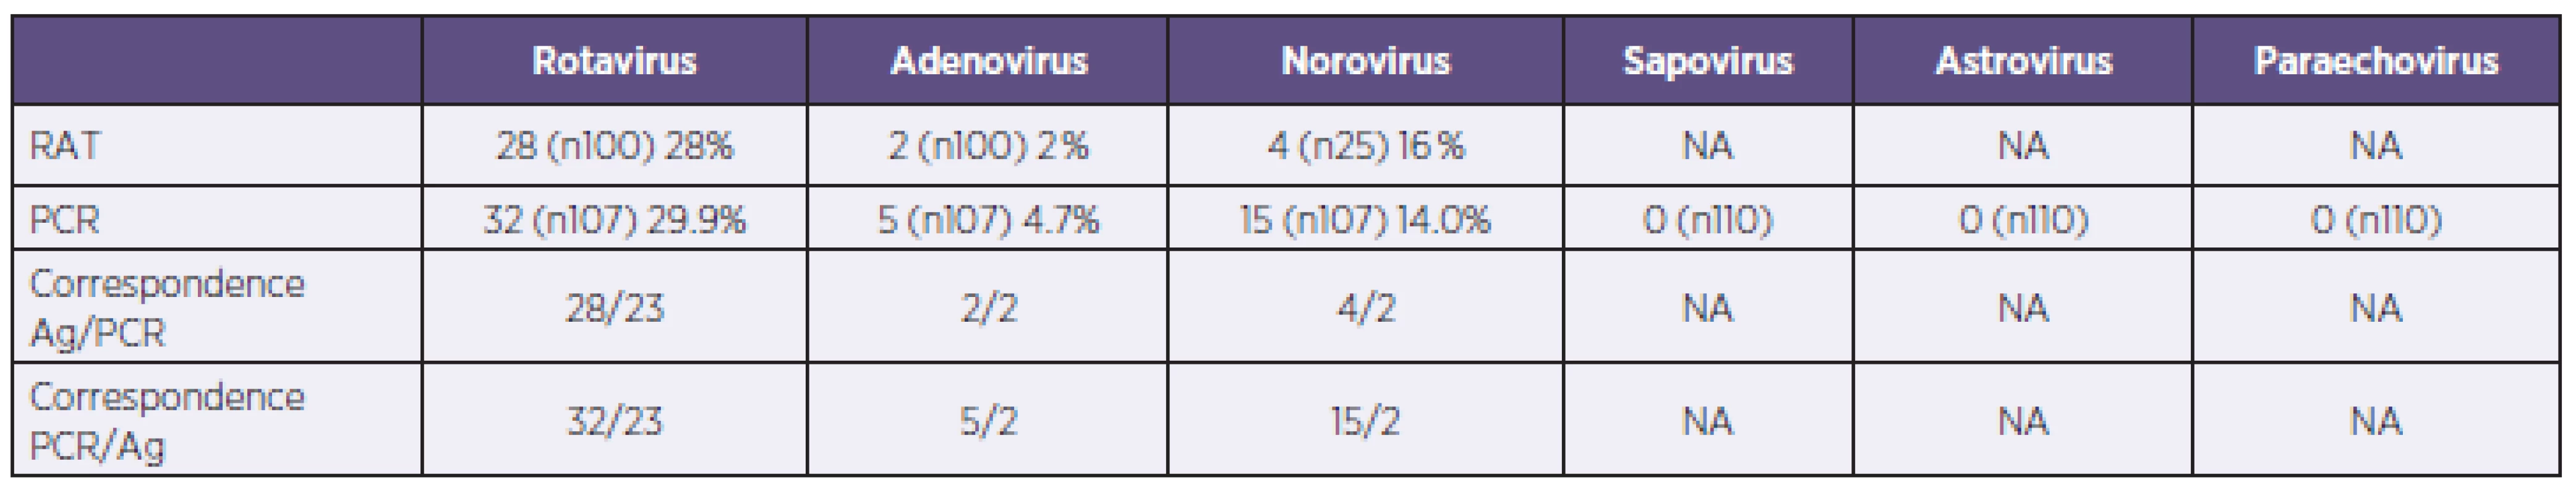 Results of rapid antigen detection tests (RAT) and PCR (NA – data not applicable for negative results)
Tabulka 2. Výsledky v záchytu pozitivit u použitých imunochromatografických testů (RAT) a PCR (NA – data nedostupná pro záchyt pouze negativních nálezů)